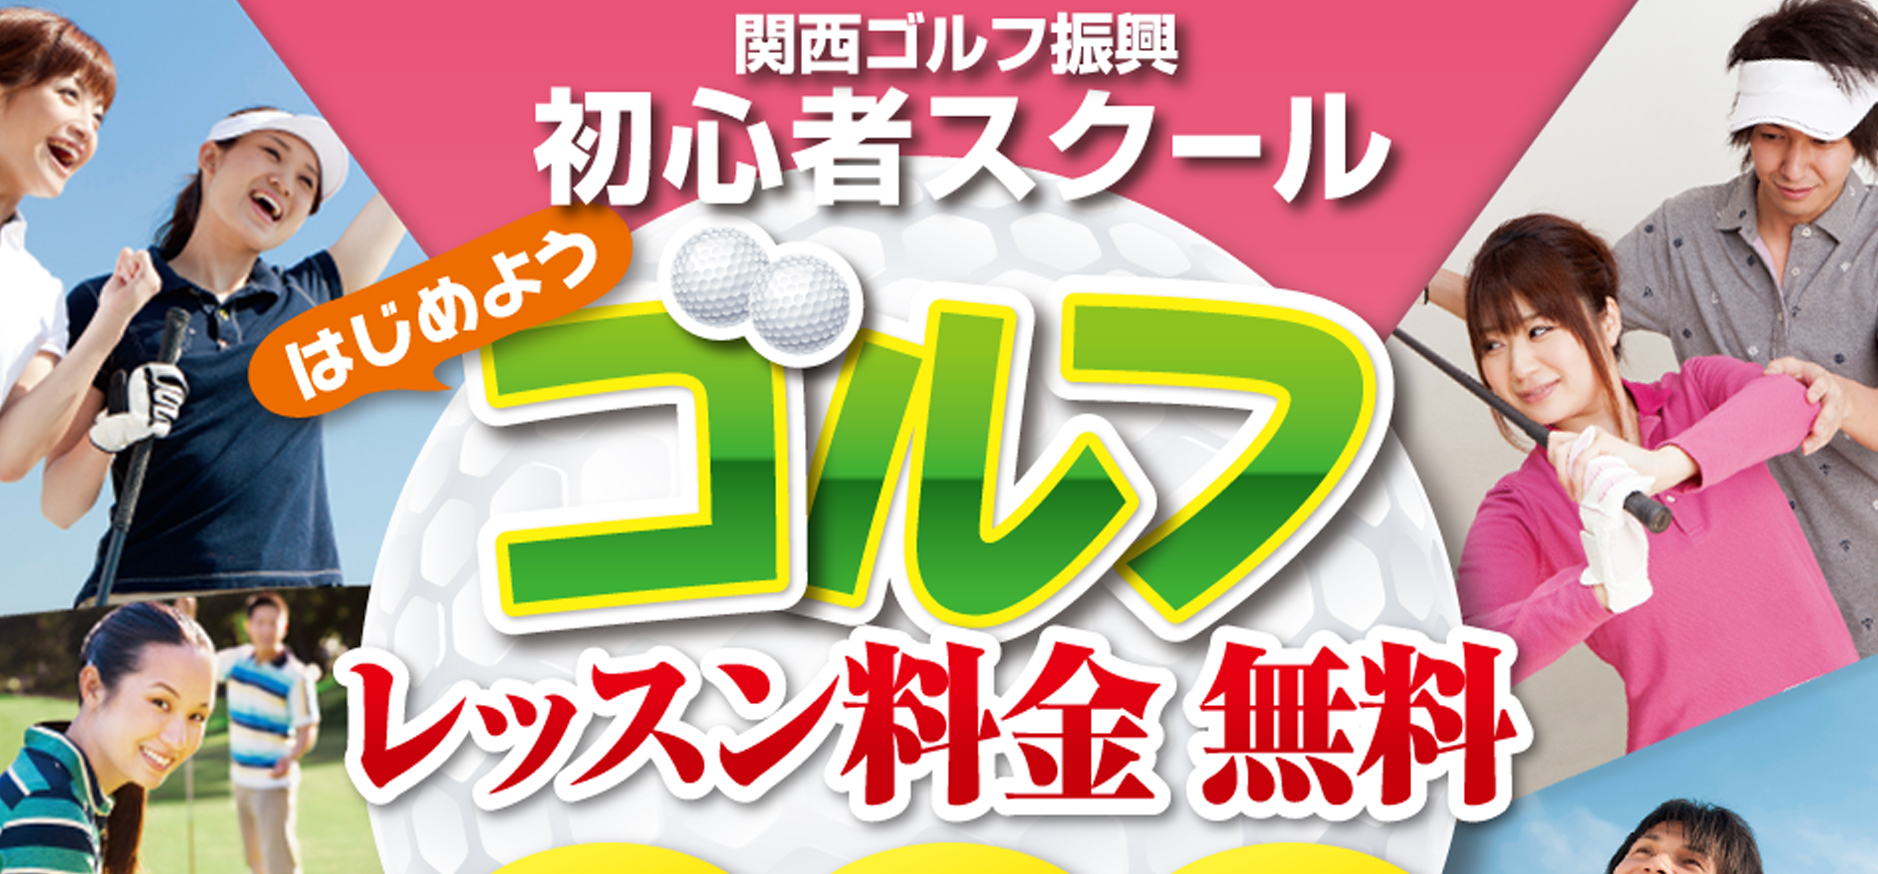 関西ゴルフ振興主催「成人初心者ゴルフスクール」受講生募集中